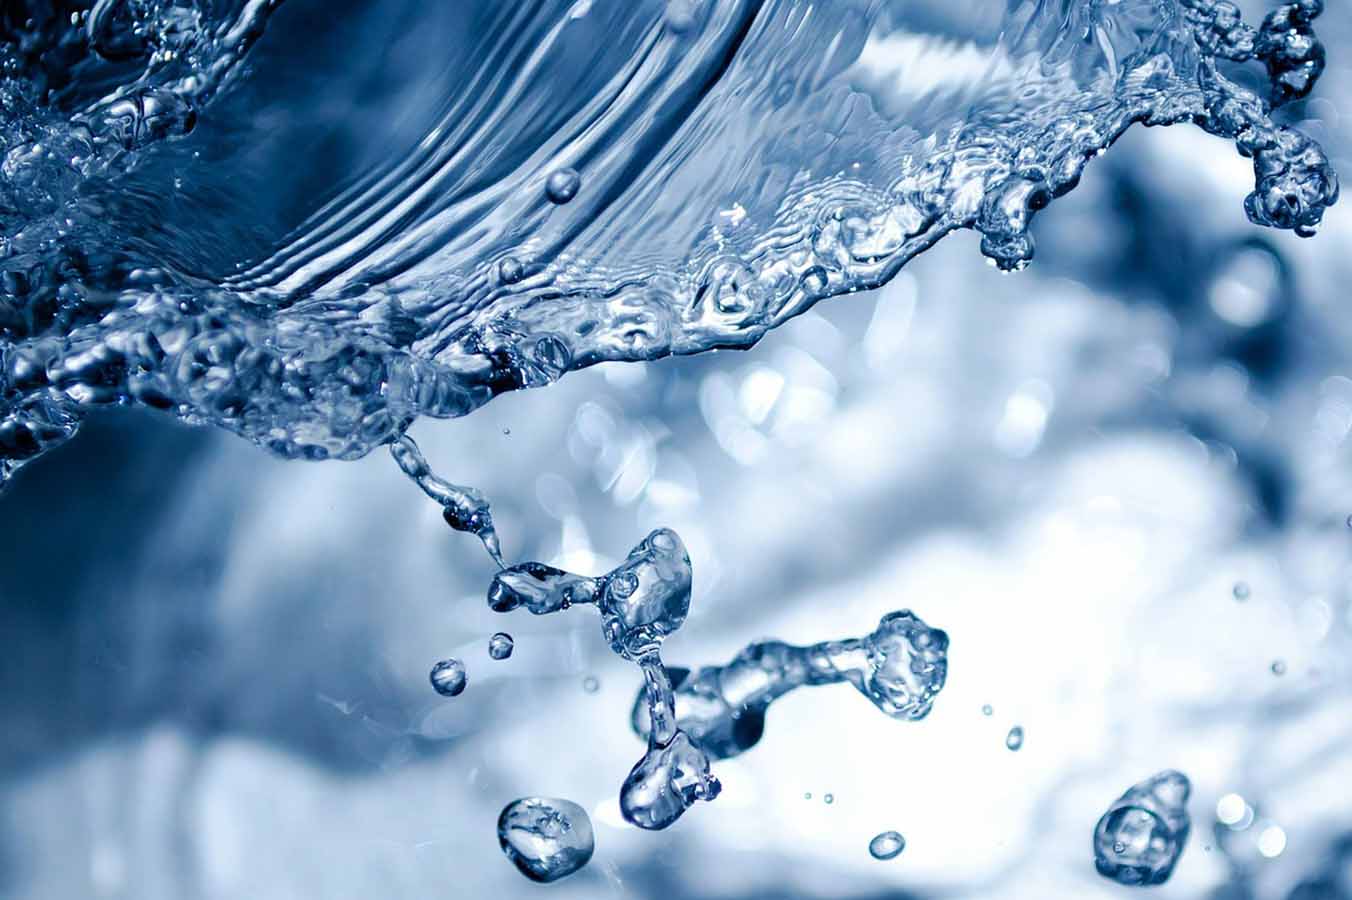 Traitement de l'eau - Tous les systèmes de traitement pour eau domestique !